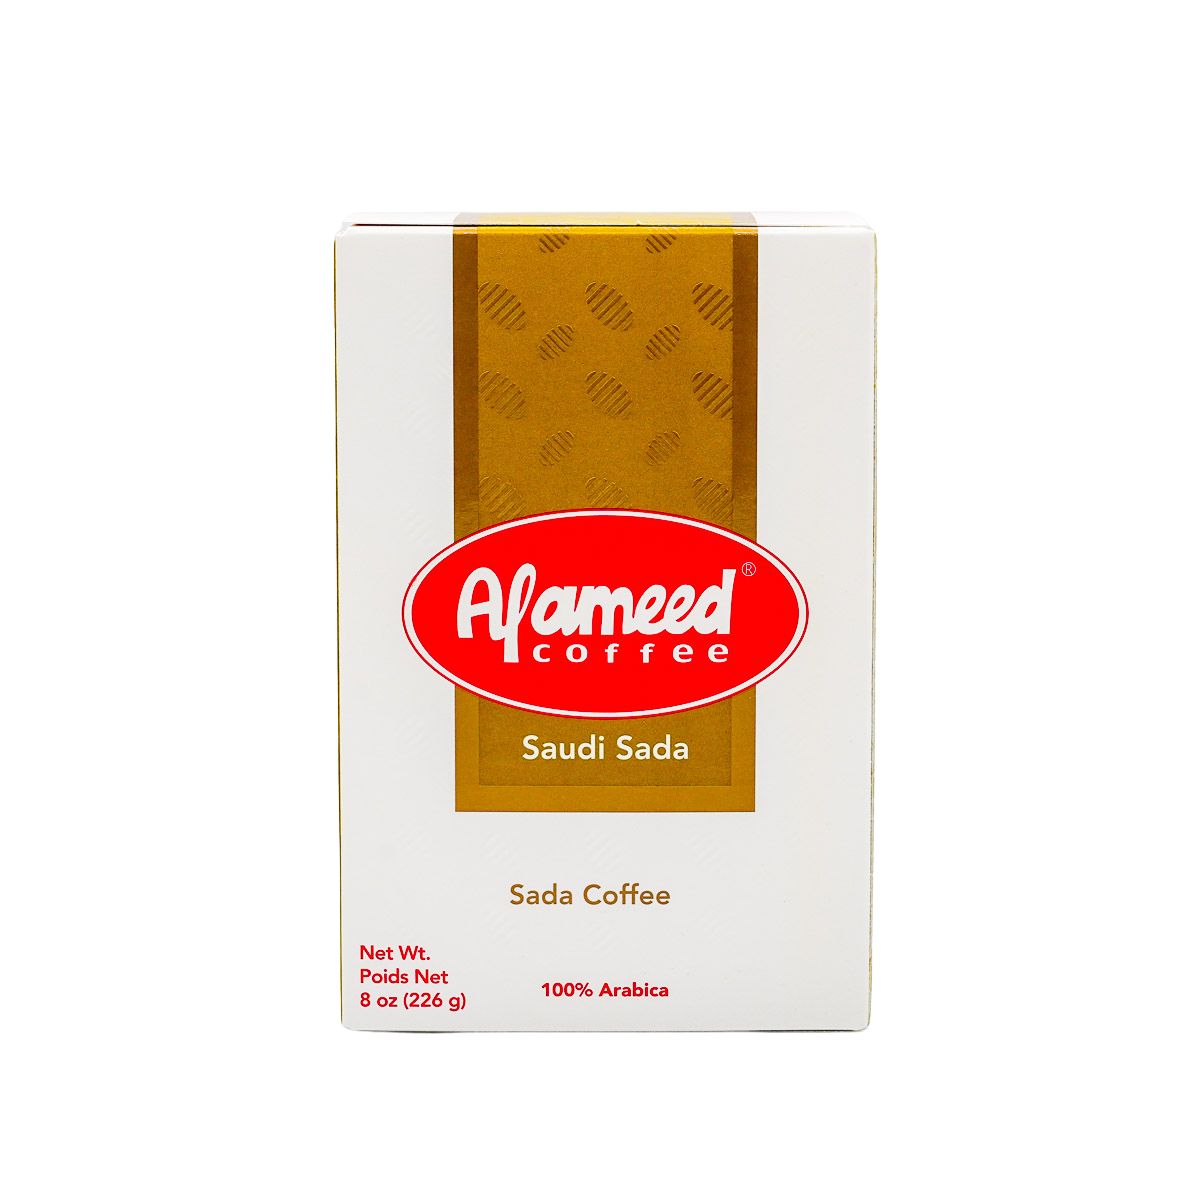 Saudi Black Coffee